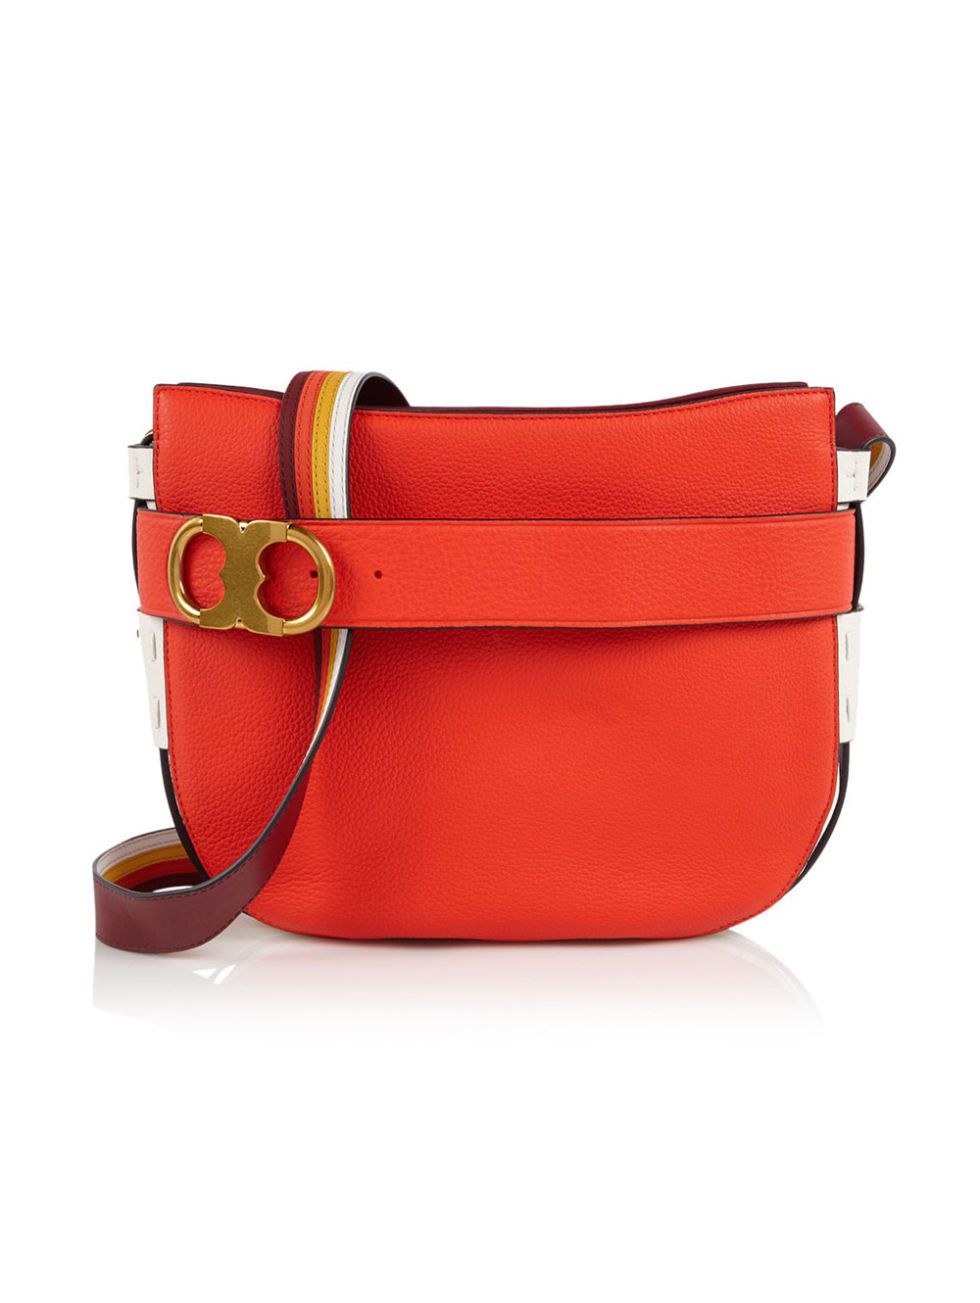 Bag, Handbag, Red, Leather, Messenger bag, Orange, Shoulder bag, Fashion accessory, Tan, Material property, 